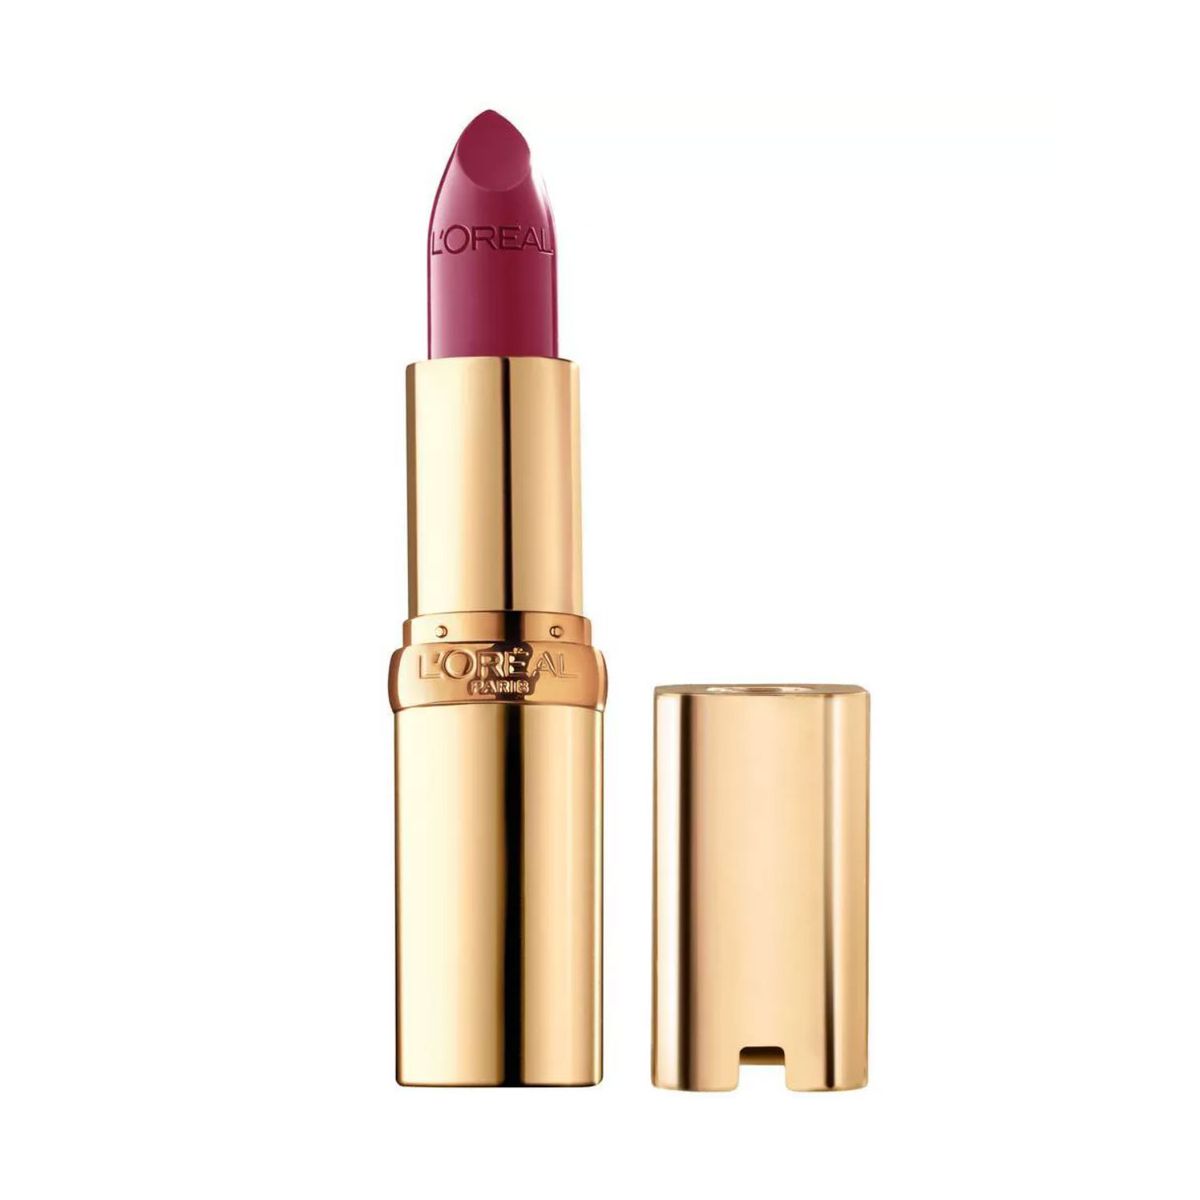 L’Oreal Paris Colour Riche Original Satin Lipstick for Moisturized Paris.NY